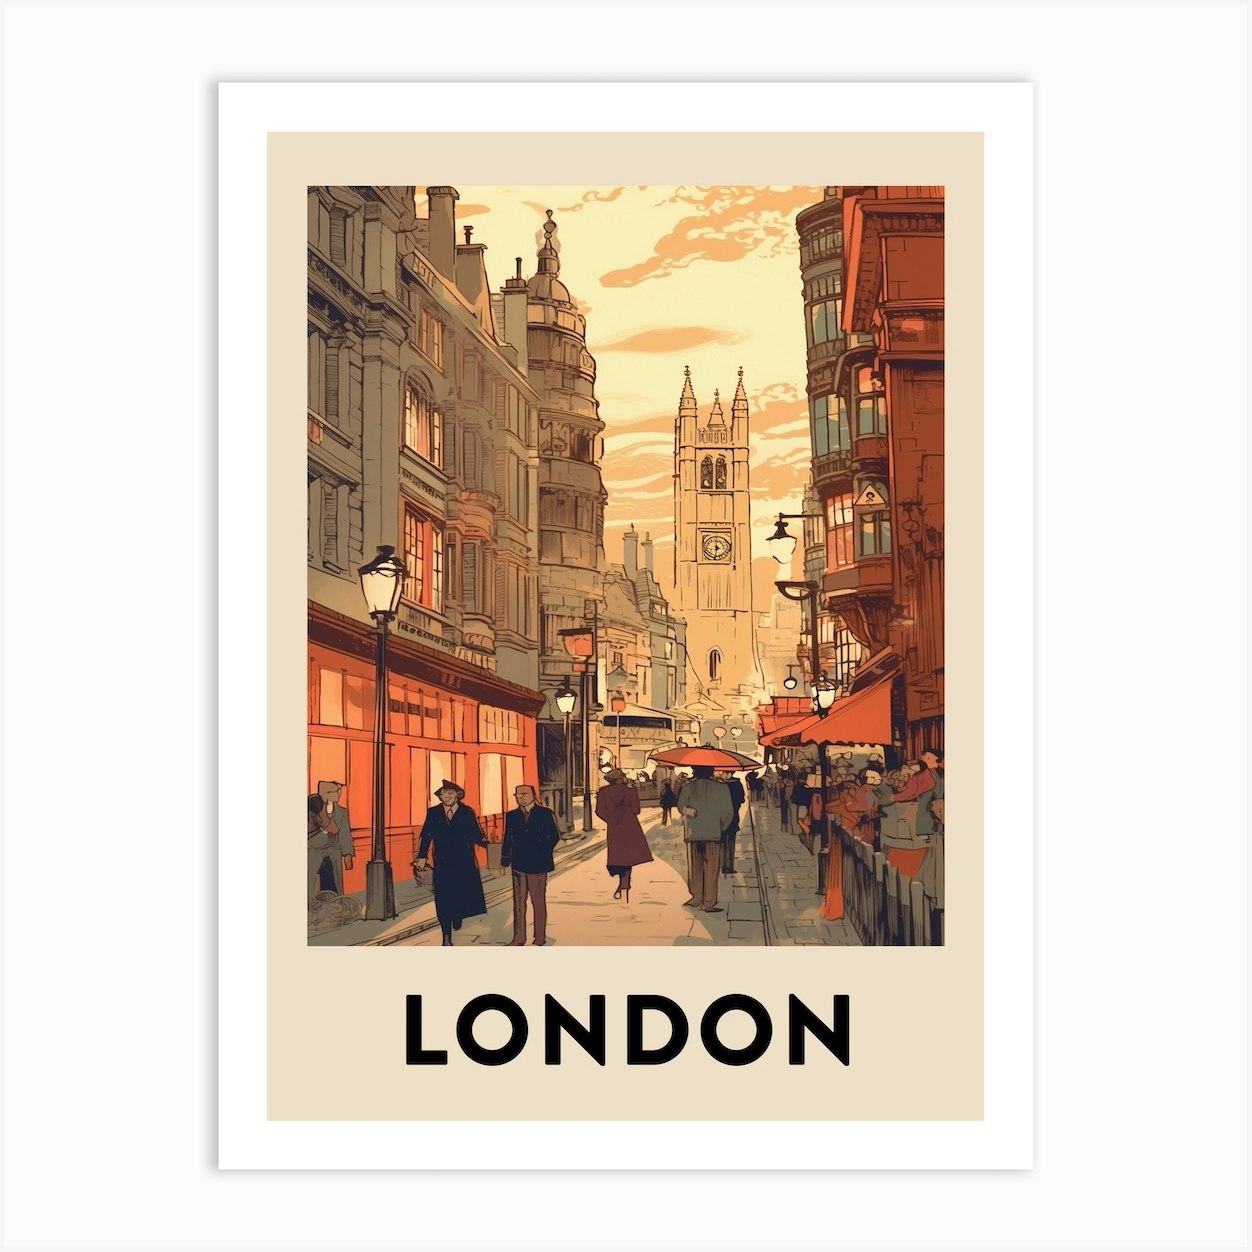 Illustration London - Vintage Travel Poster